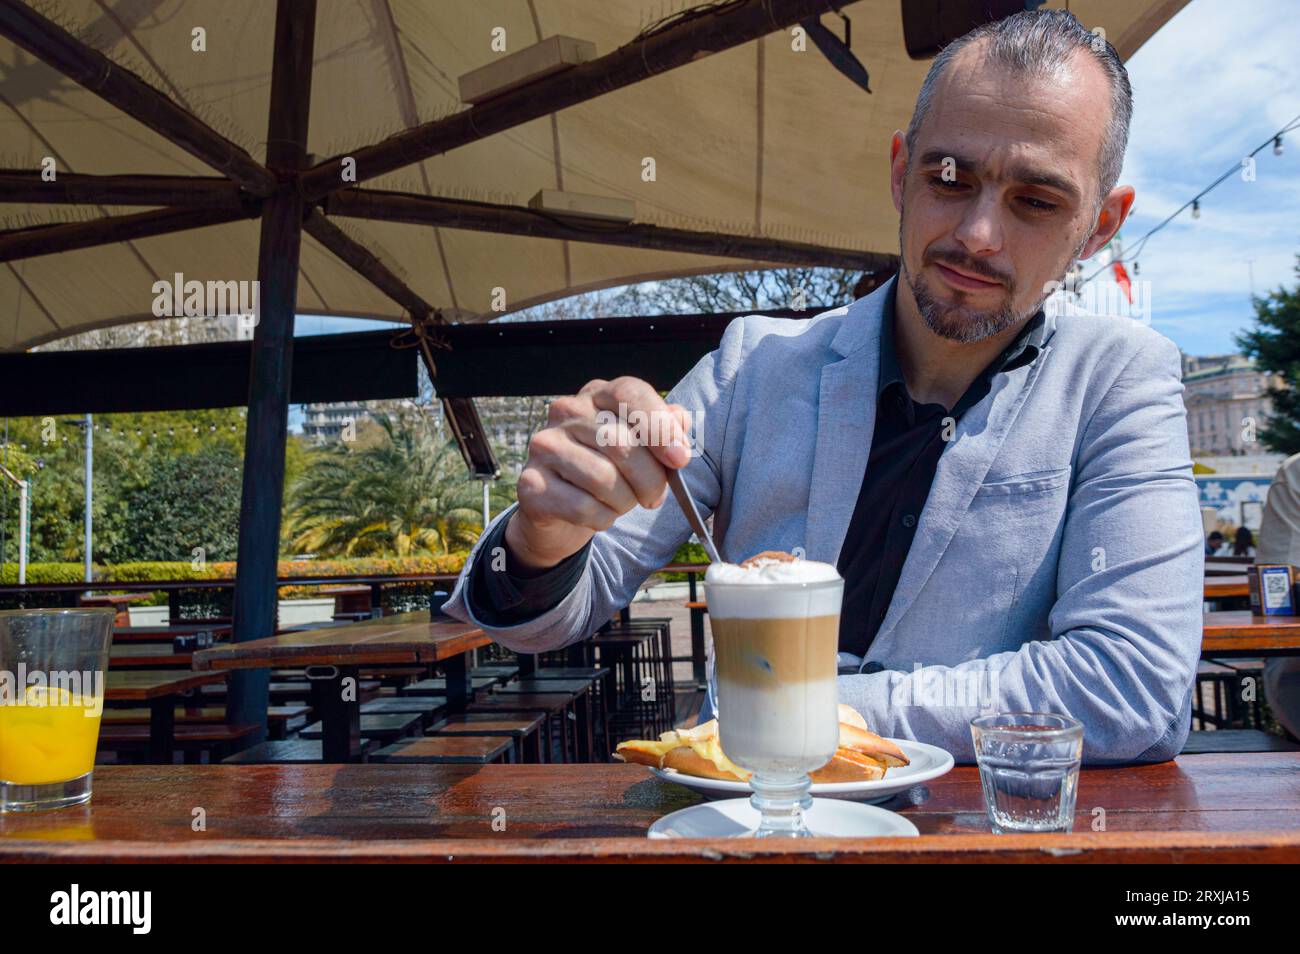 Homme adulte français caucasien avec barbe, souriant heureux d'avoir le petit déjeuner de café avec sandwich et jus d'orange assis à l'extérieur du restaurant, de la nourriture et dr Banque D'Images